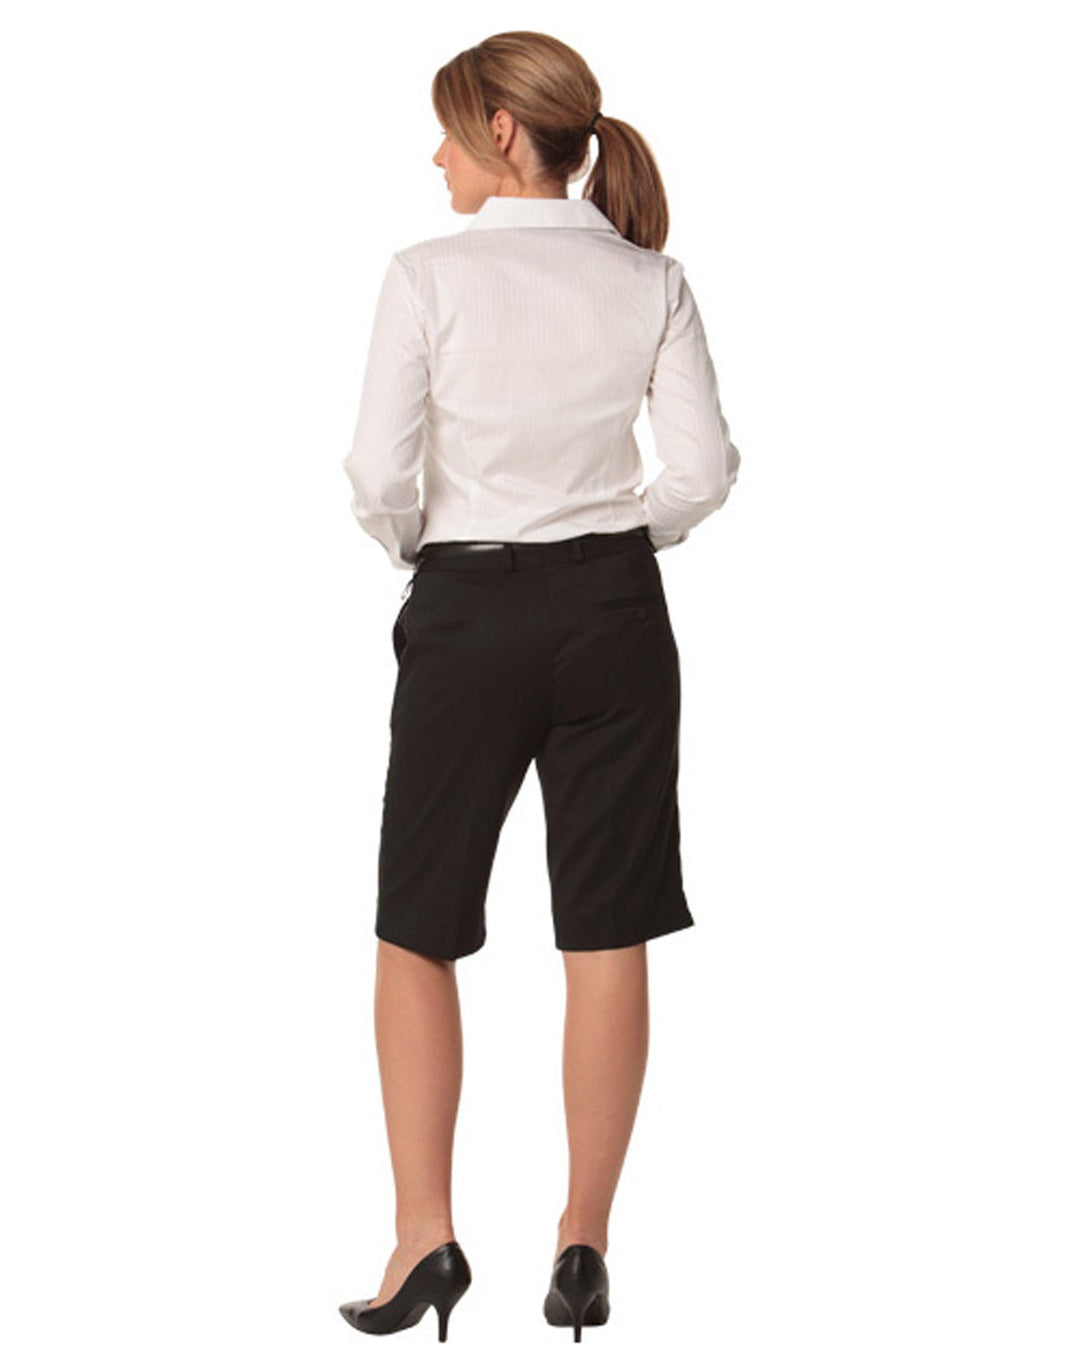 M9441 Women's Poly/Viscose Stretch Knee Length Flexi Waist Shorts